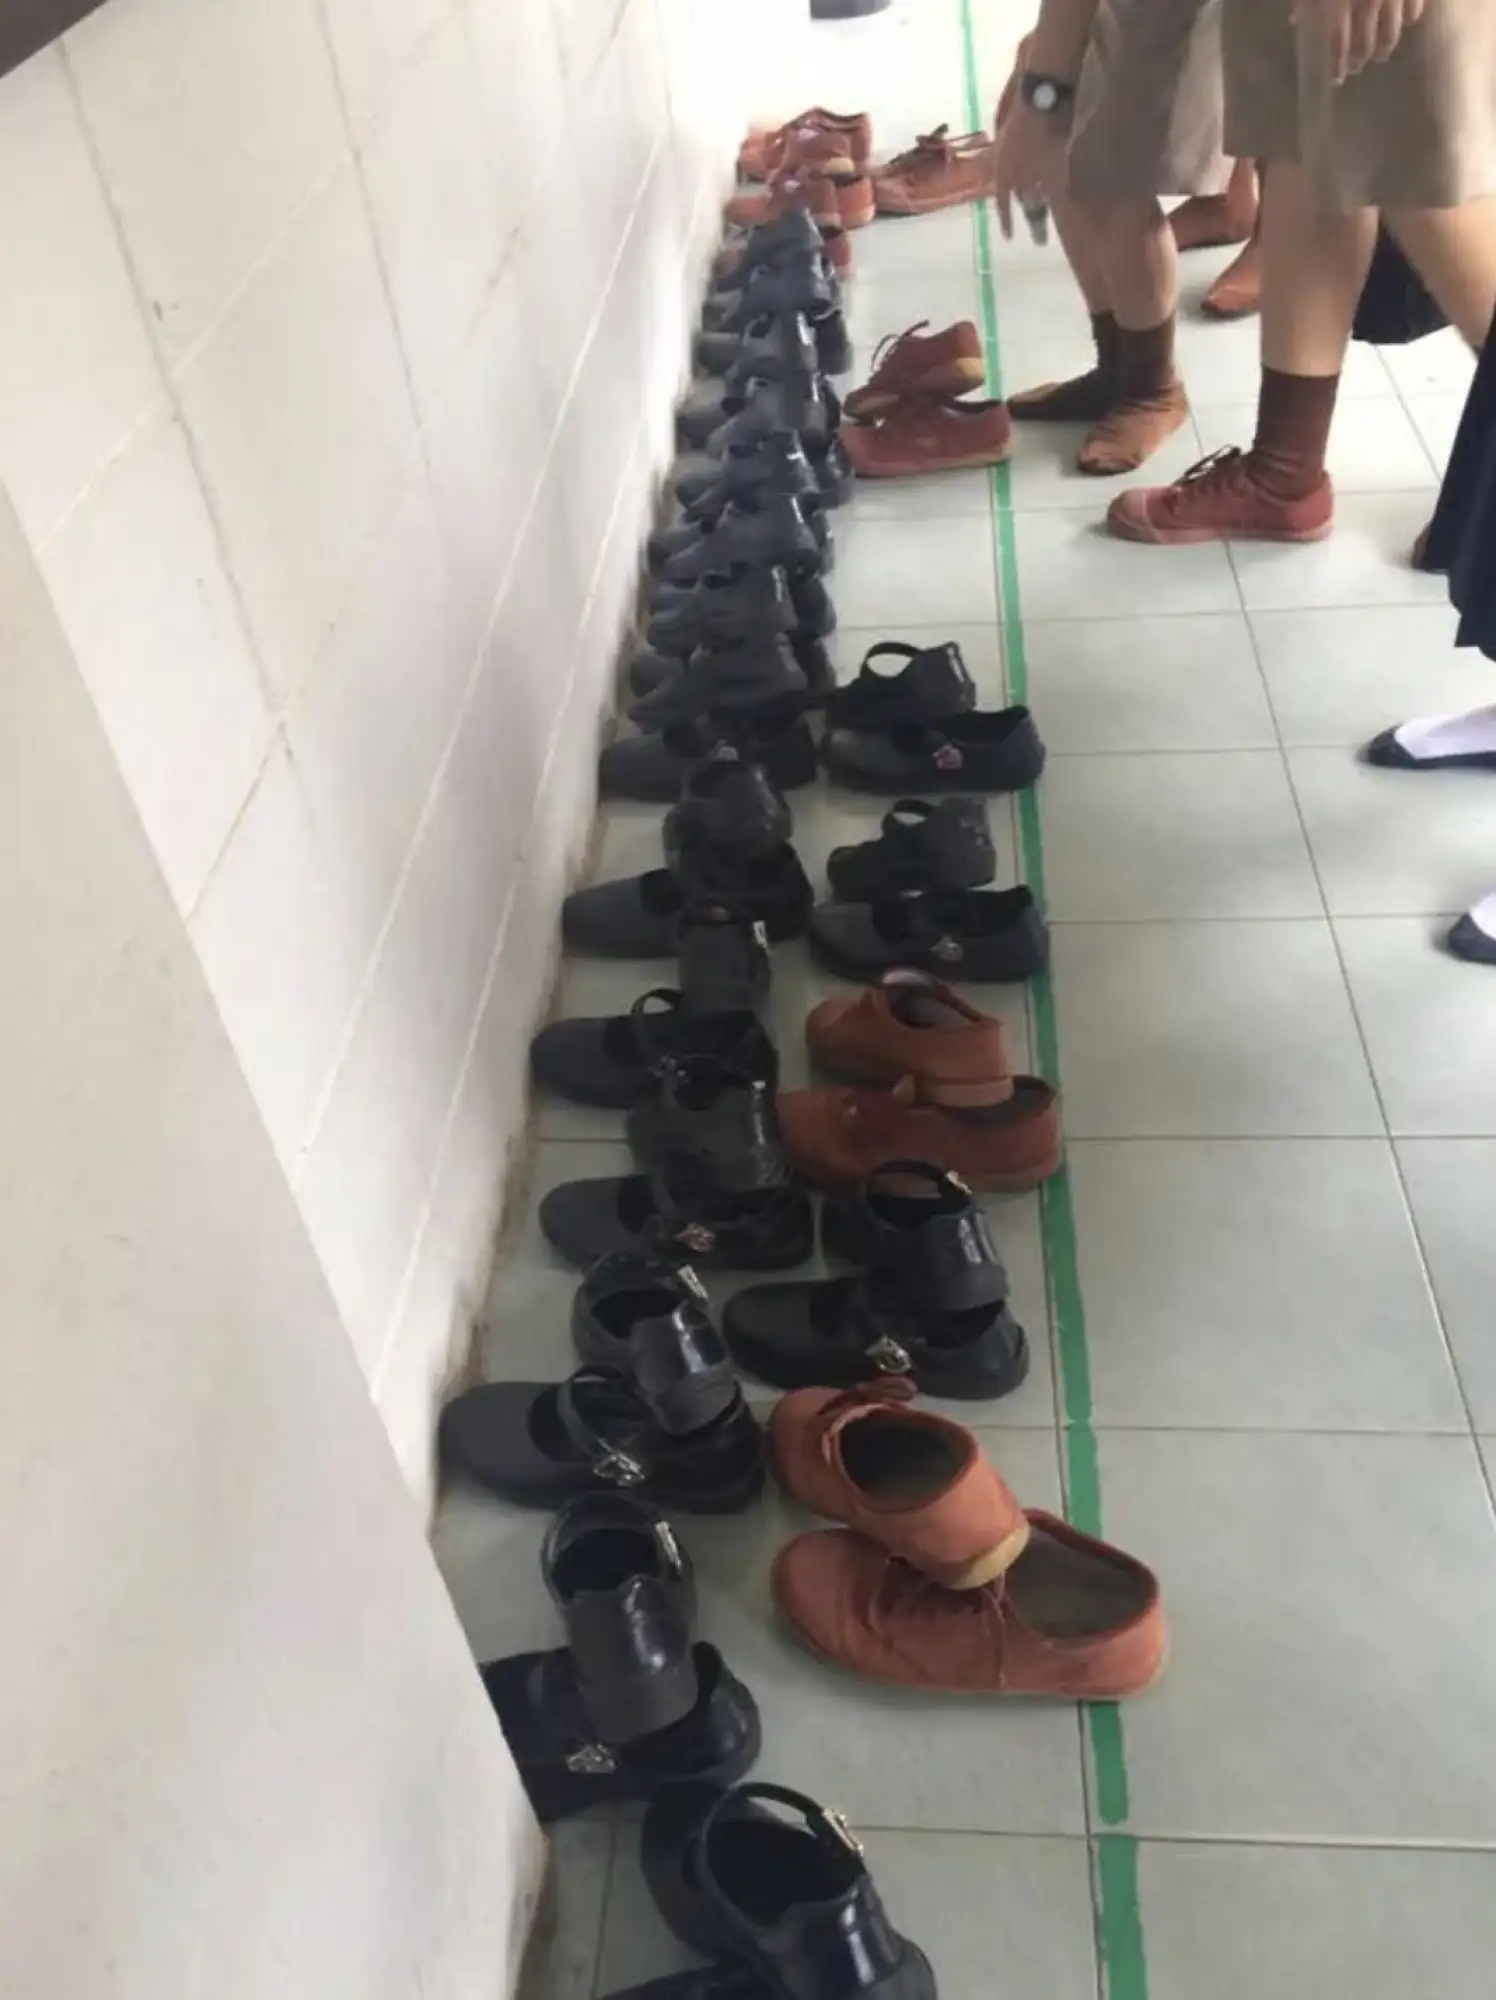 進教室前要脫鞋（圖片來源：滬江泰語）